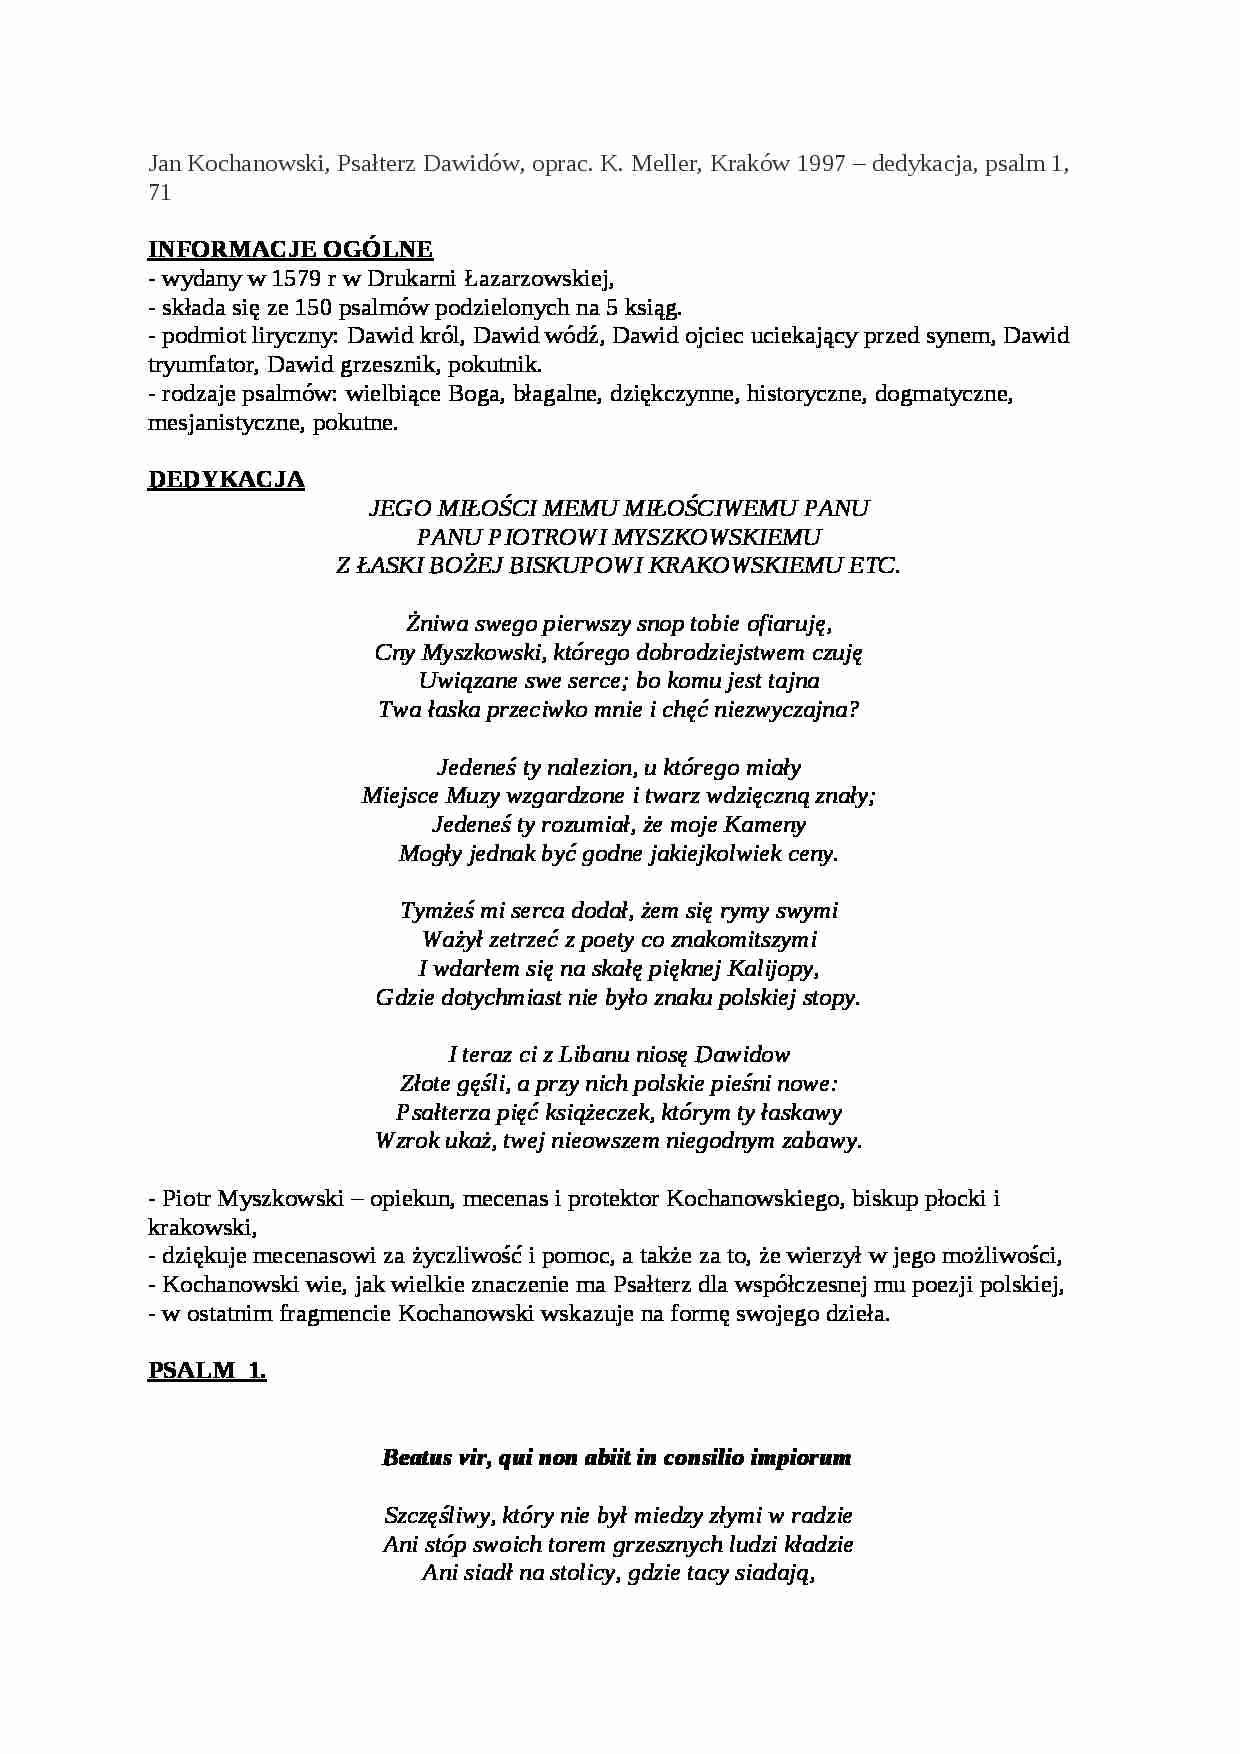 Jan Kochanowski, Psałterz Dawidów - dedykacja, psalm 1, 71 - strona 1